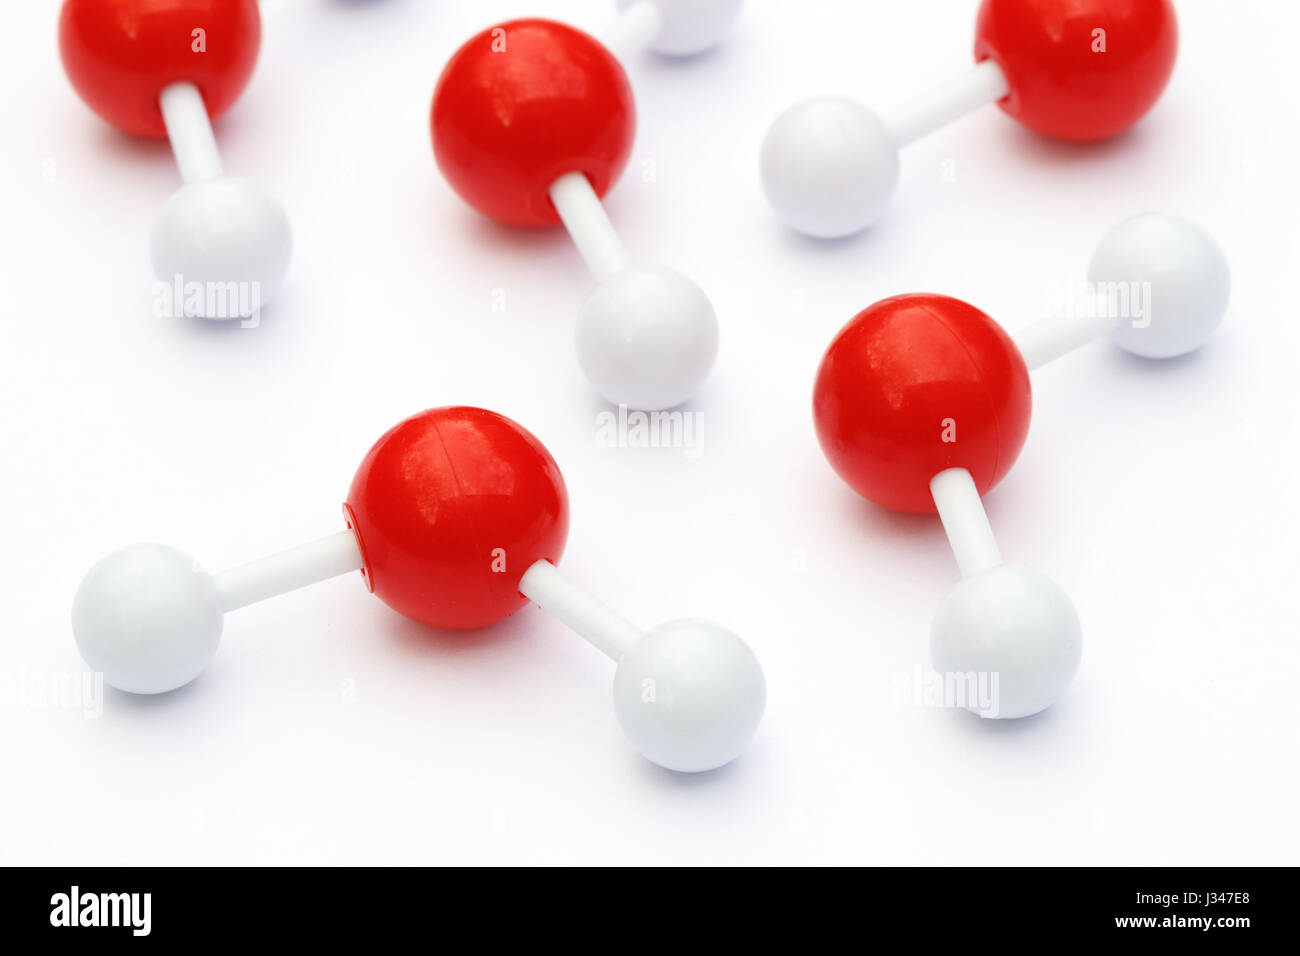 Balle en plastique et le bâton, modèles de molécules d'eau sur un fond blanc. Les molécules d'eau sont constituées de deux atomes d'hydrogène liés à un atome d'oxygène. Banque D'Images